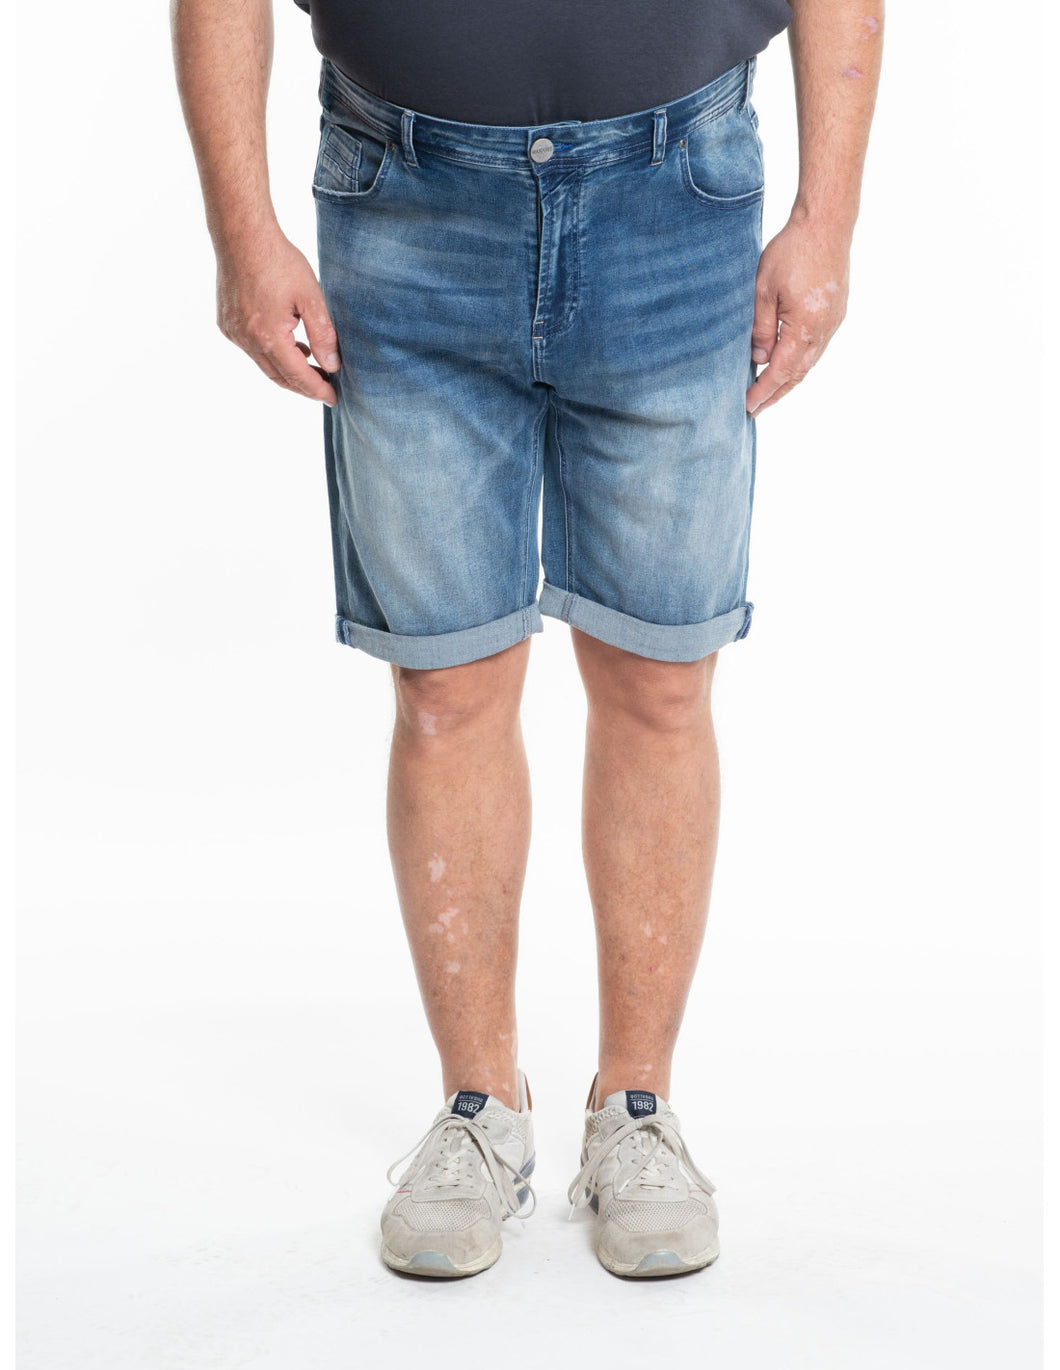 Kratke super raztegljive jeans hlače MAXFORT Pinza konfekcijske številke 62 do 88 promocijska cena